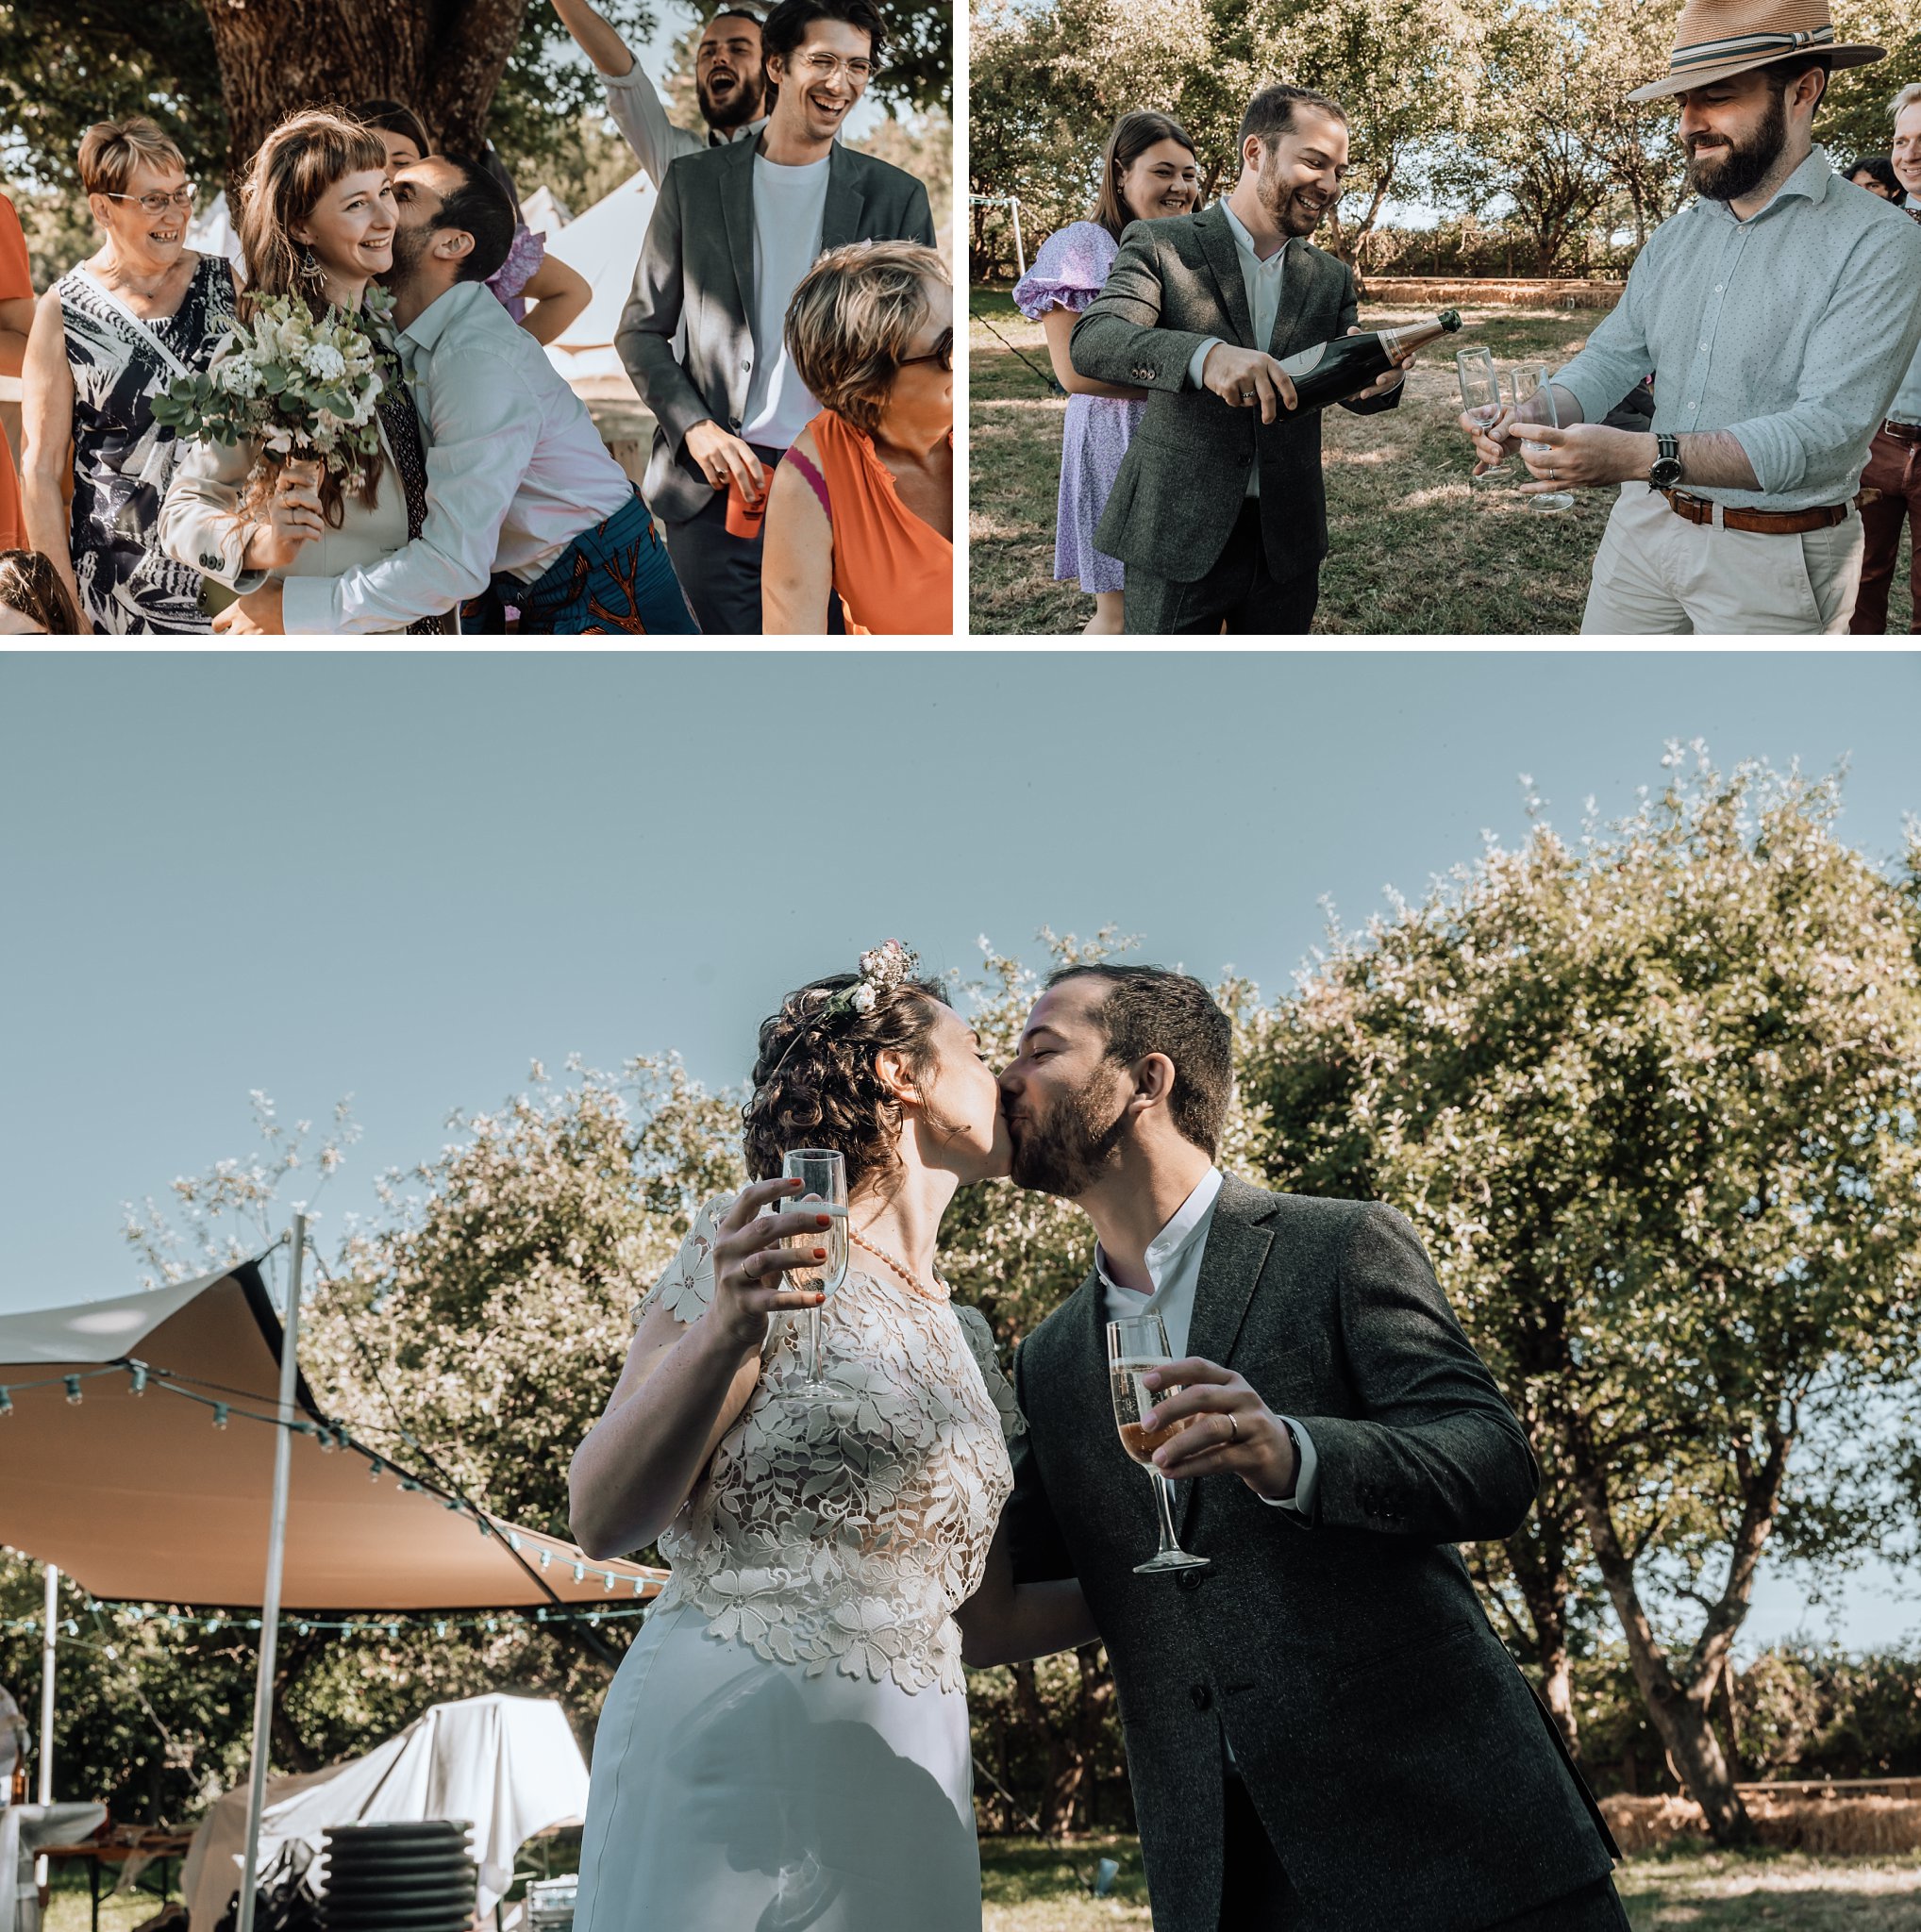 Les mariés s'embrassent la coupe de champagne à al main, Un reportage photo mariage en Bretagne sur le thème champêtre et bohème